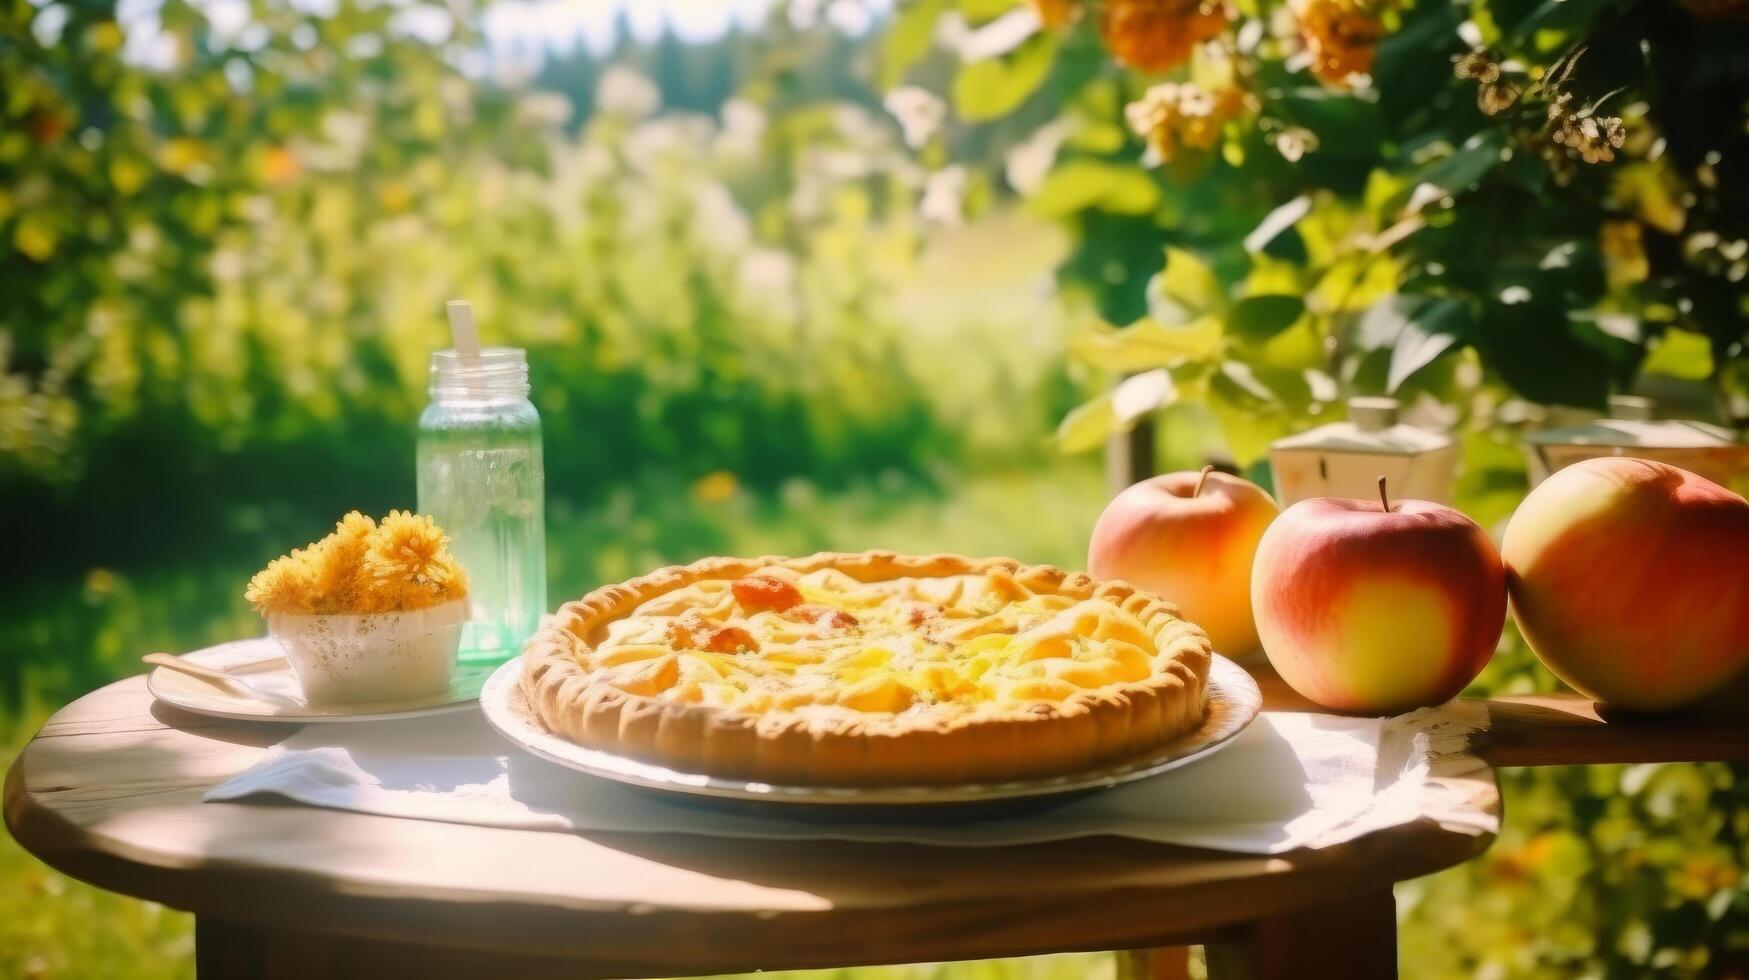 Apple pie in apple garden. Illustration photo